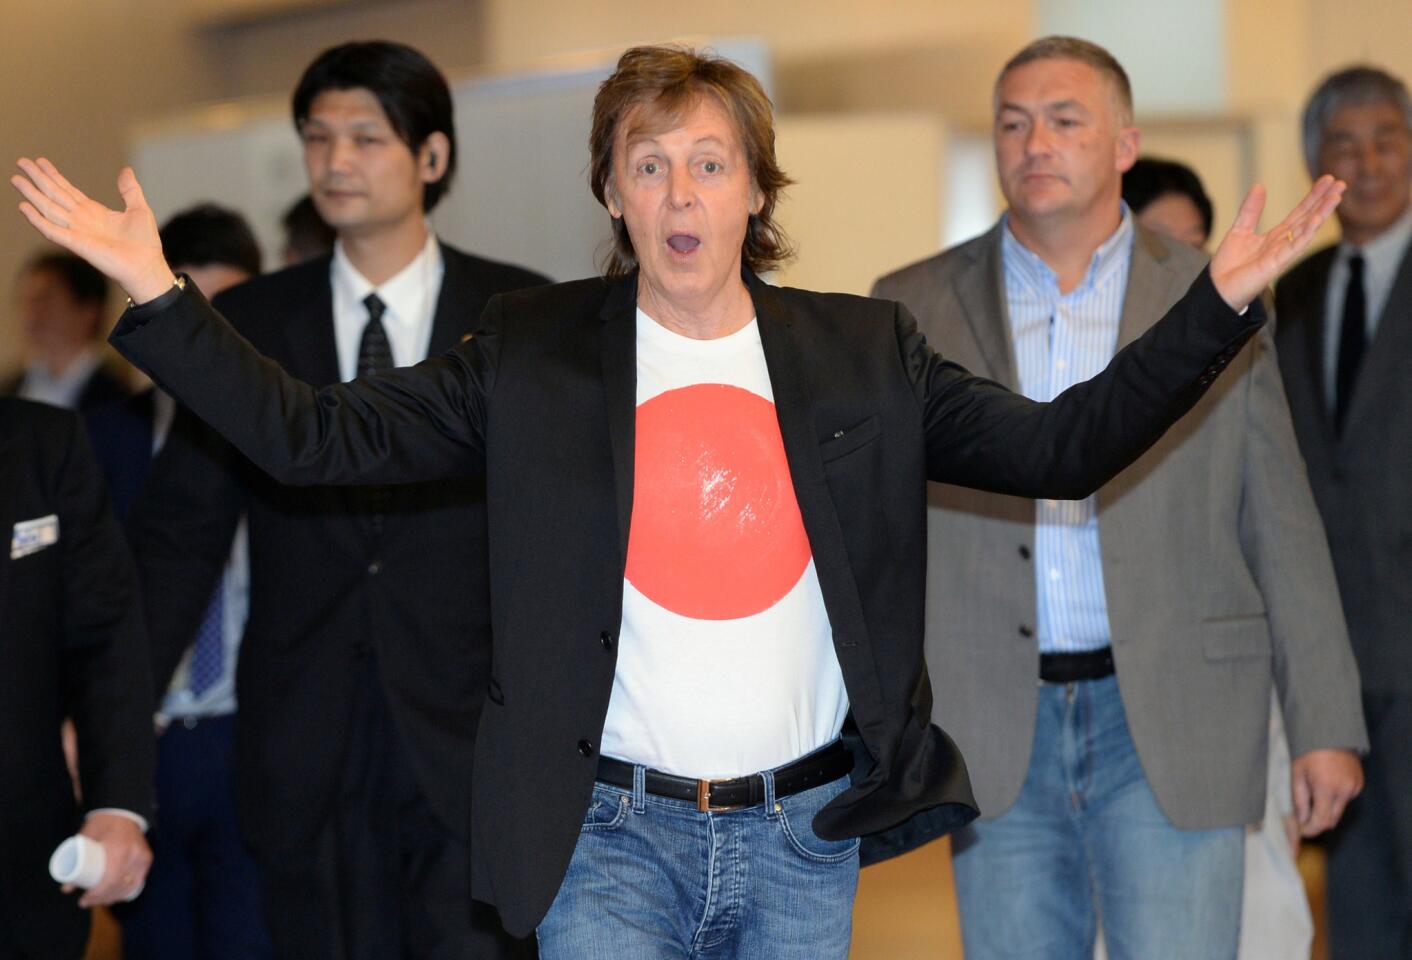 Paul McCartney postpones all concerts in Japan, South Korea